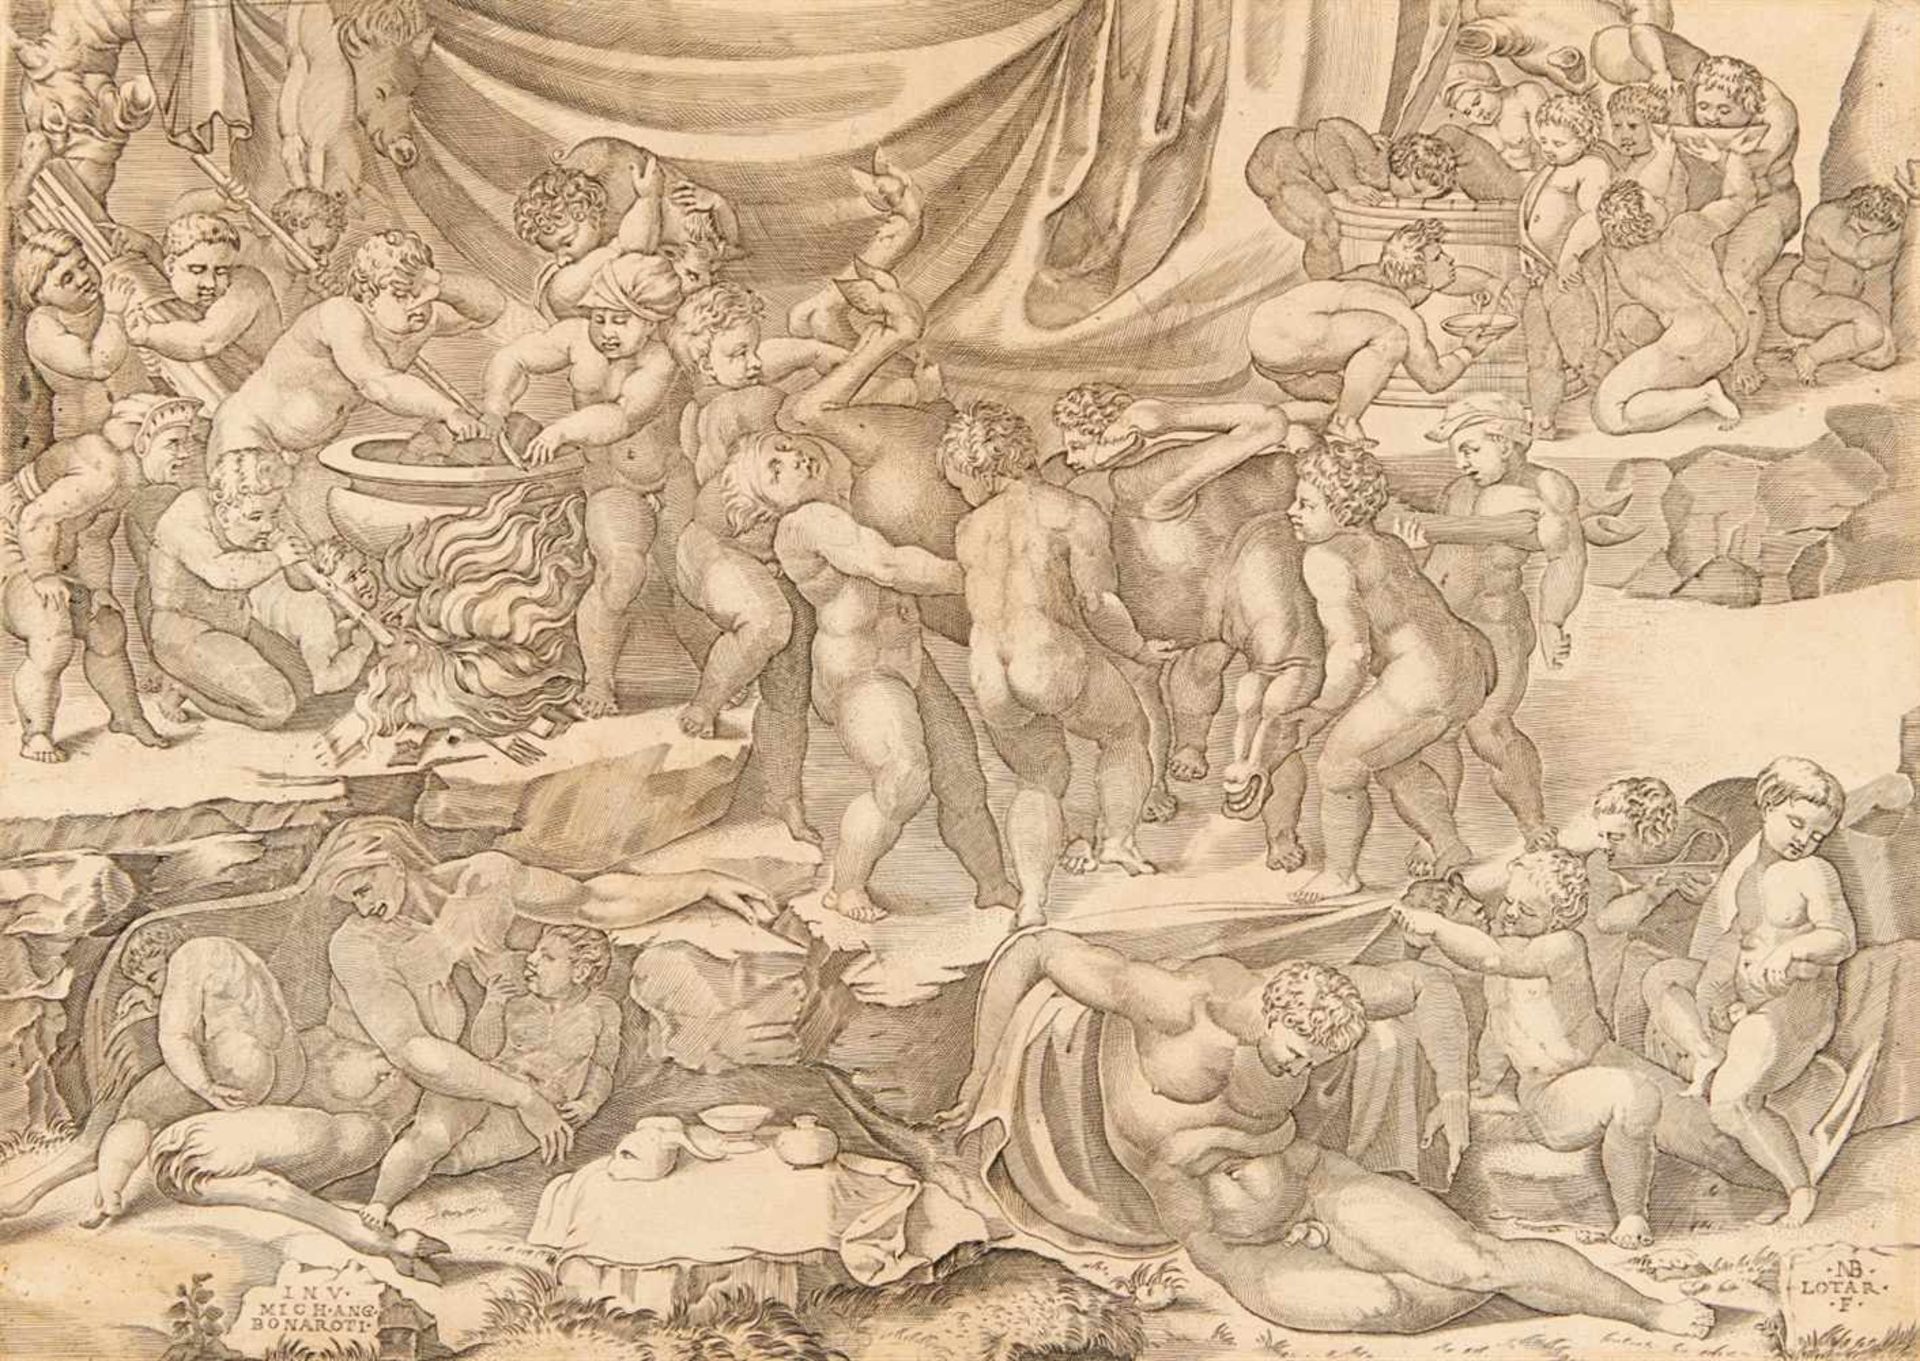 NICOLAUS BEATRIZETThionville 1507/15 - 1570 RomDas Bacchanal. Kupferstich auf Bütten nach